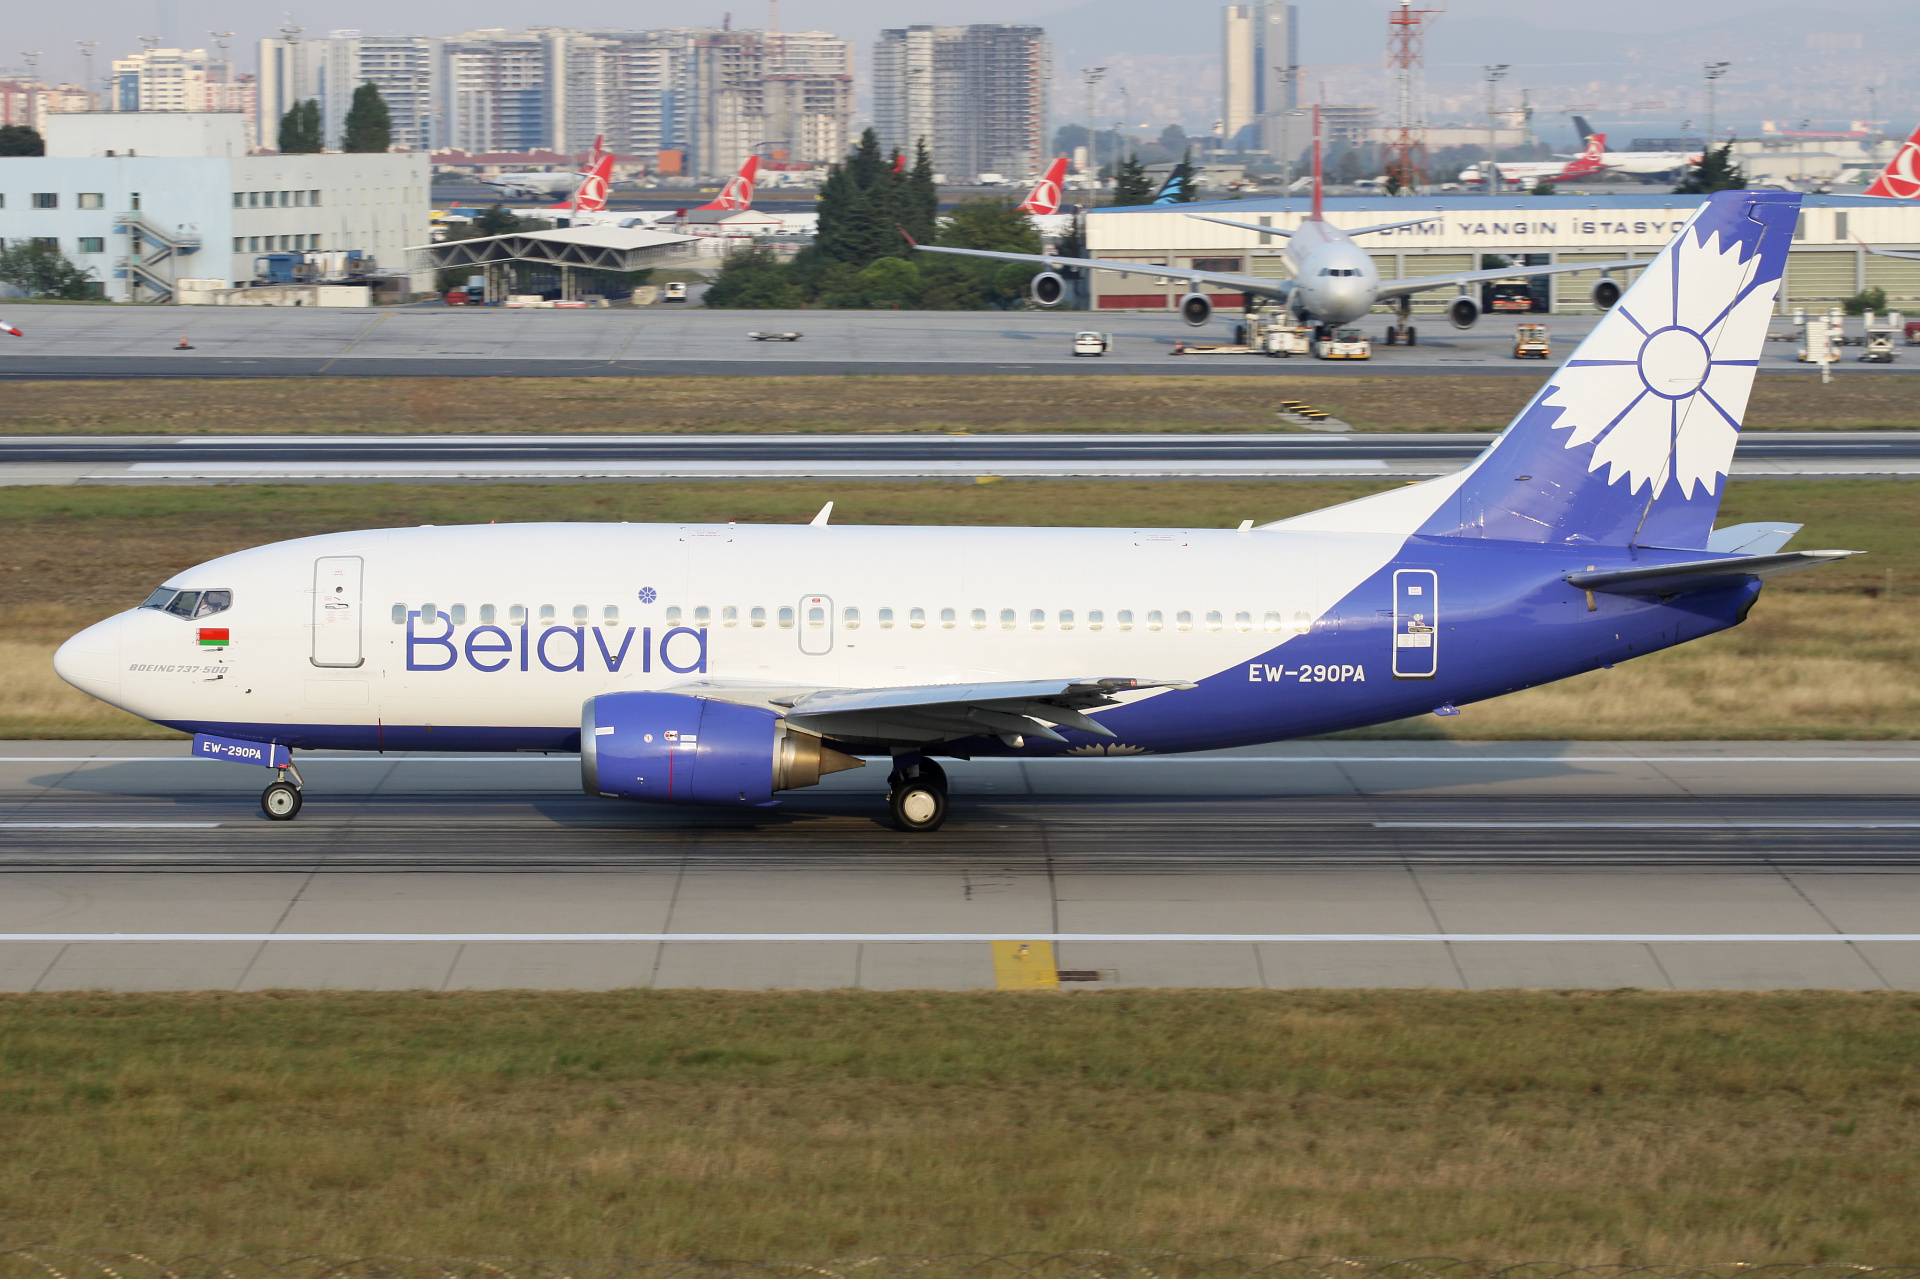 EW-290PA, Belavia (Samoloty » Port Lotniczy im. Atatürka w Stambule » Boeing 737-500)